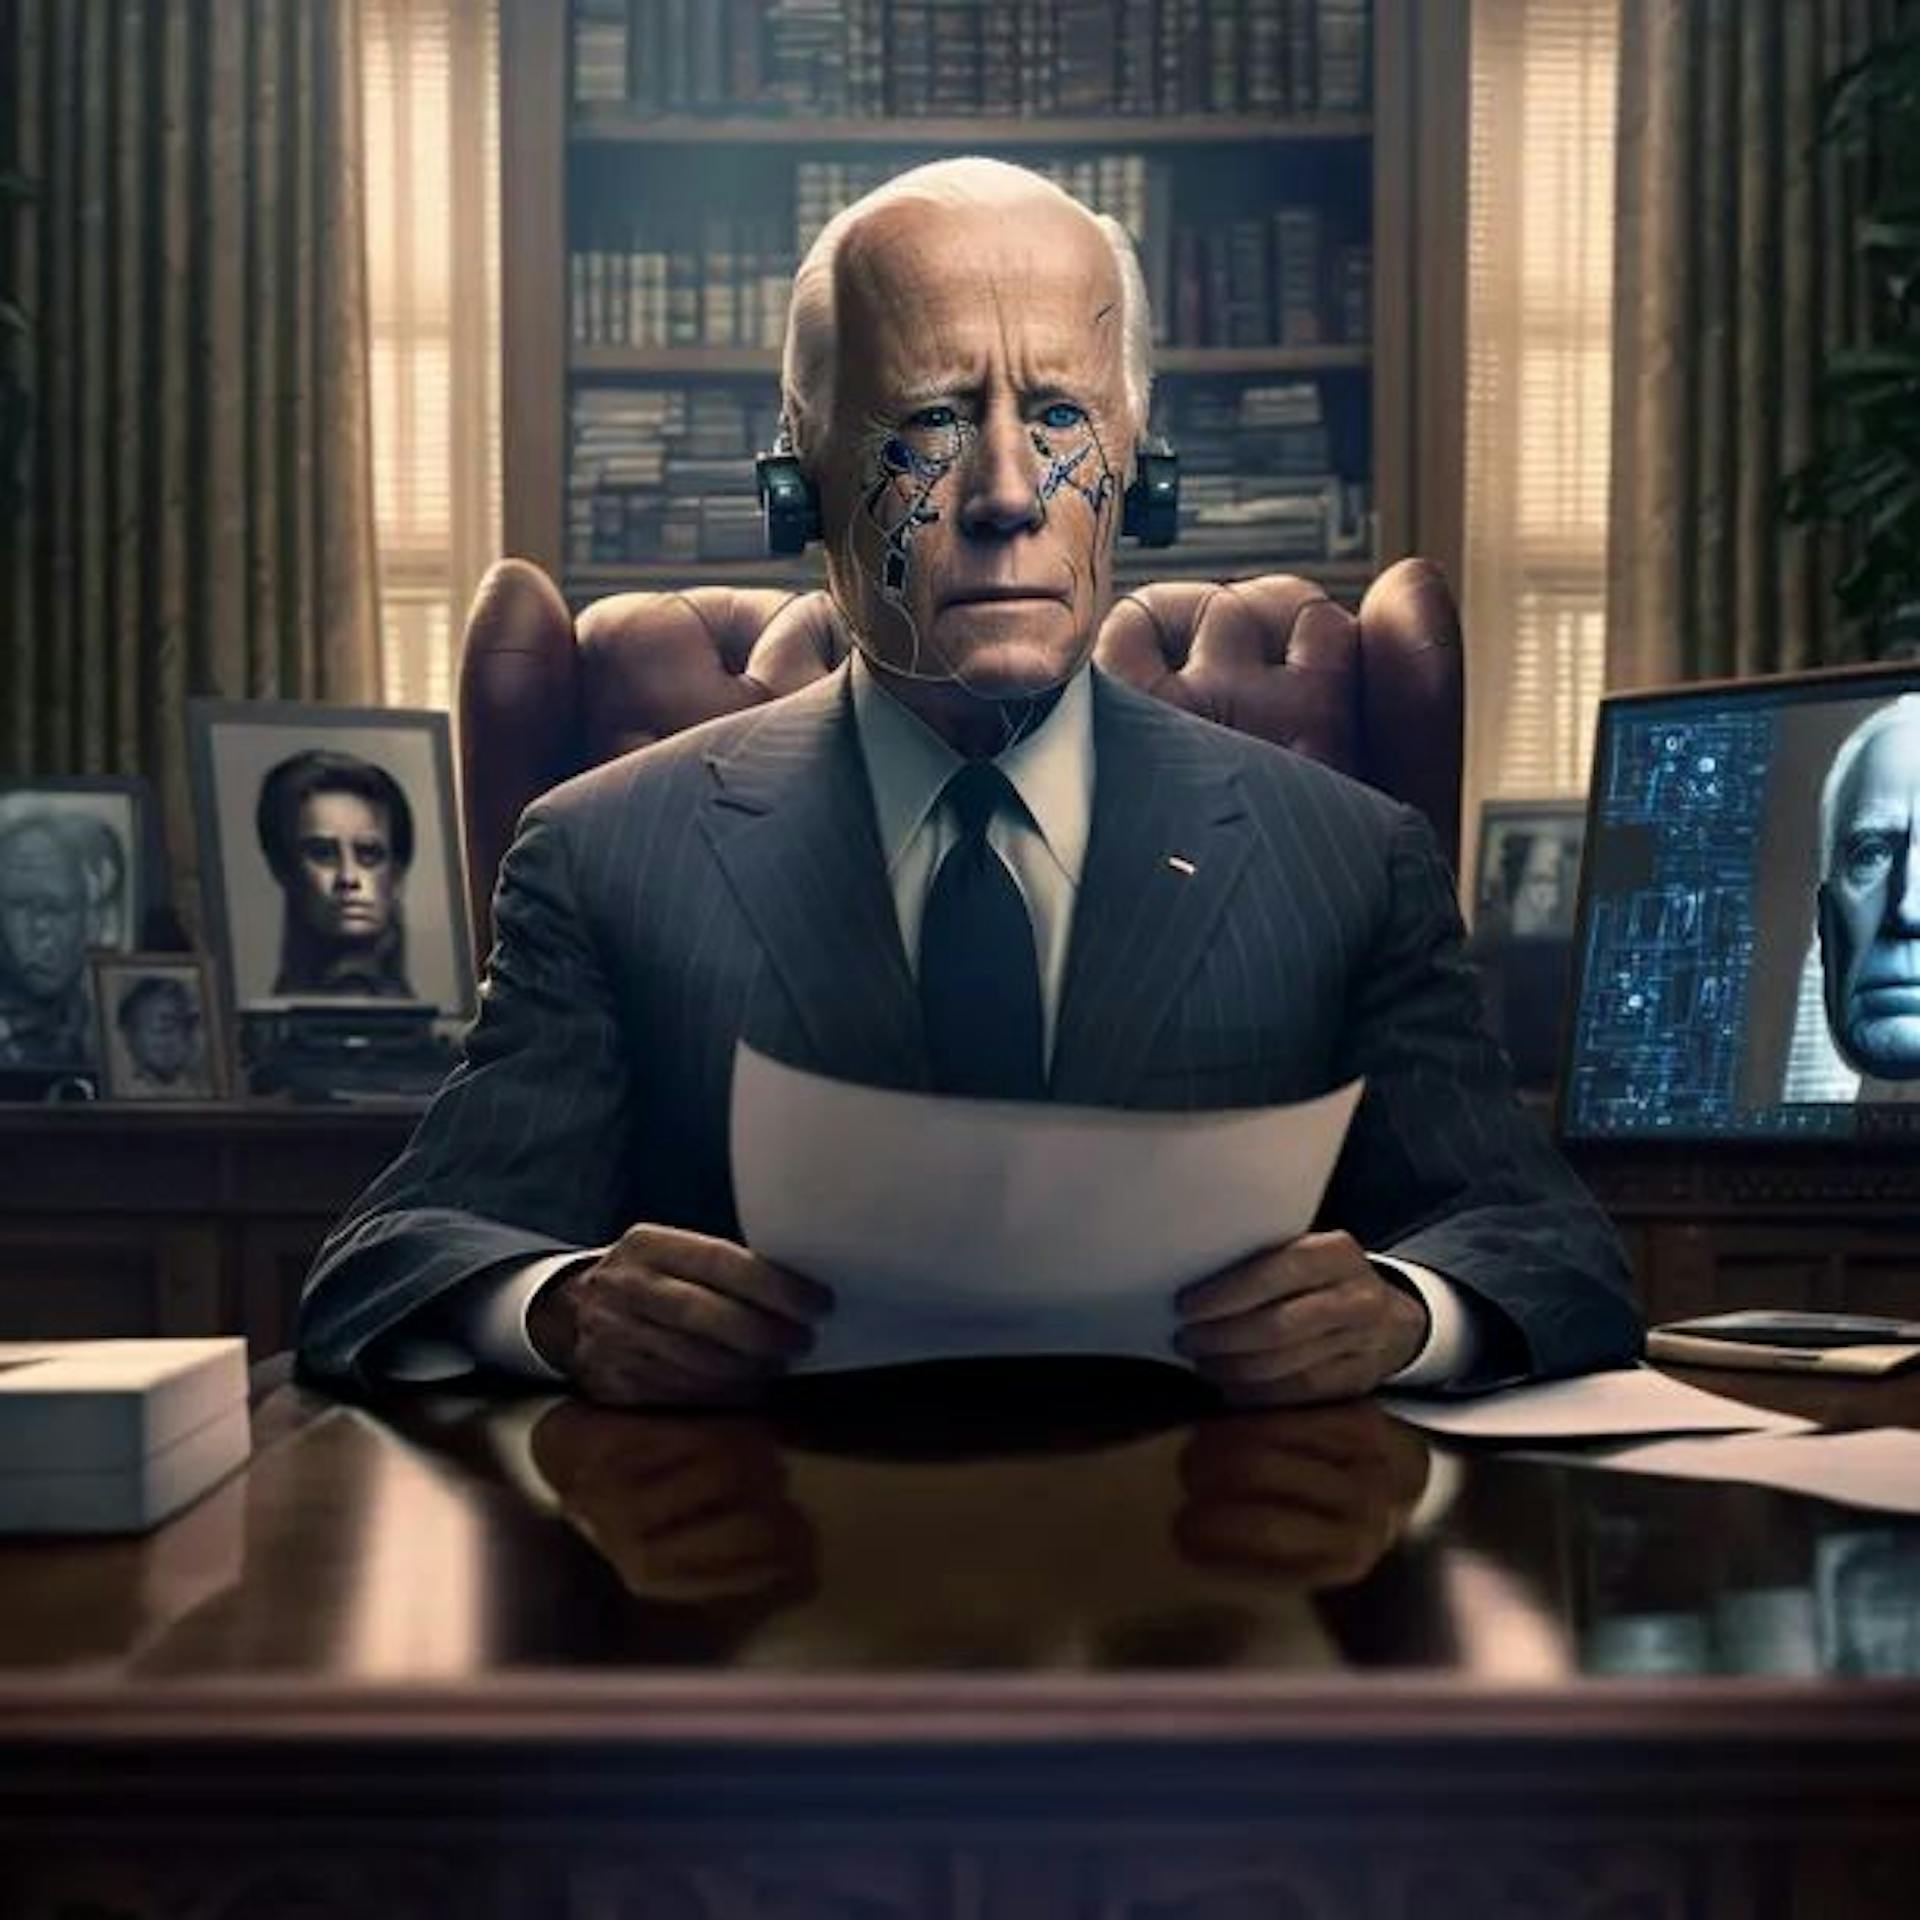 Lời nhắc giữa hành trình: hình ảnh chân thực của Joe Biden trong văn phòng bầu dục để tìm kiếm lời khuyên chính trị từ một chương trình AI biết tất cả.